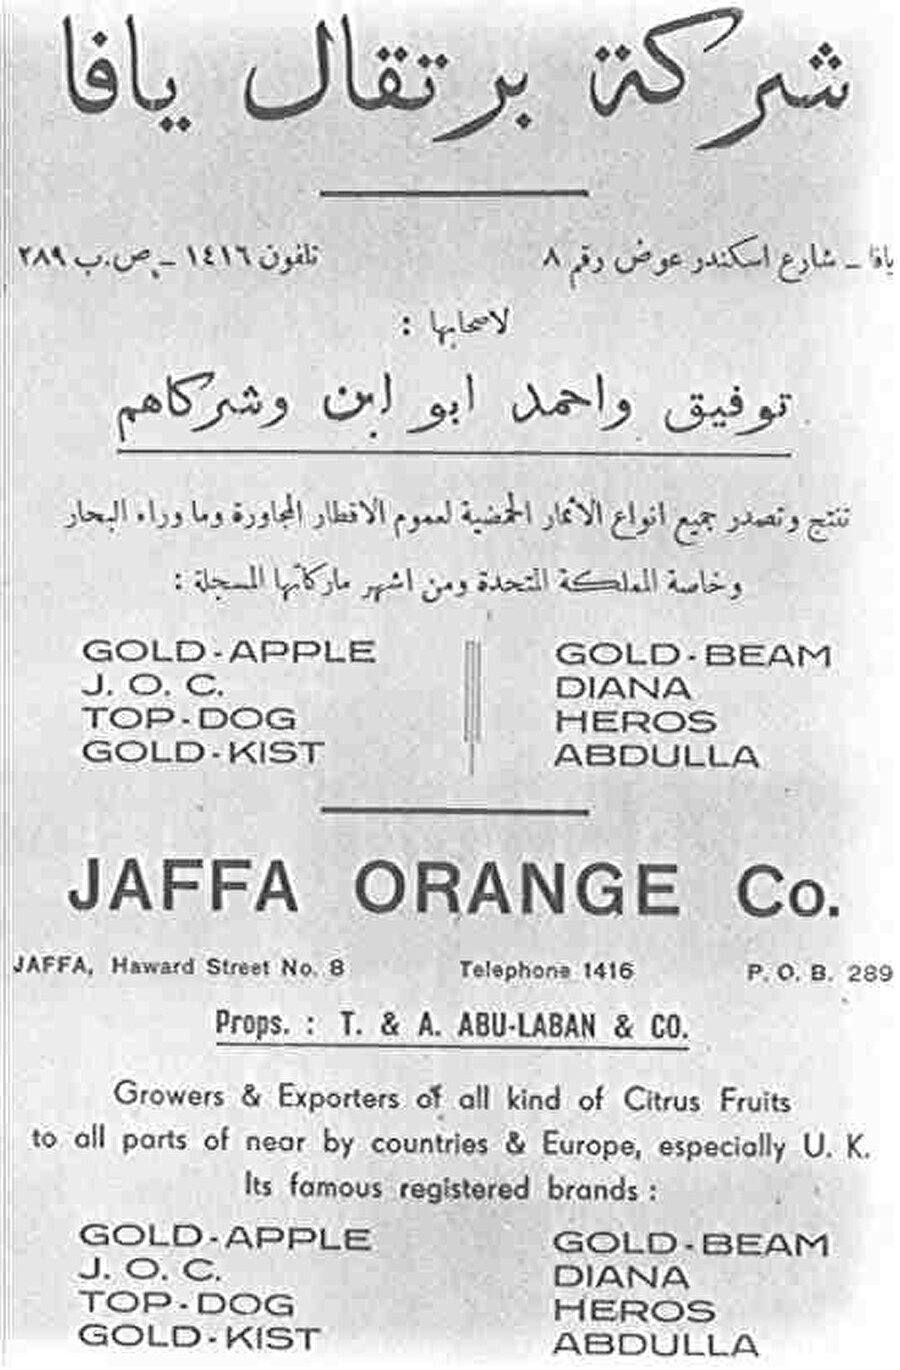 Yafa Portakal Şirketi (Şirket-i Portakal-ı Yafa). Yafa portakalı ve yerleşik pazarları, yeni kurulan 'Yahudi Devleti' için ana gelir kaynaklarından biriydi.